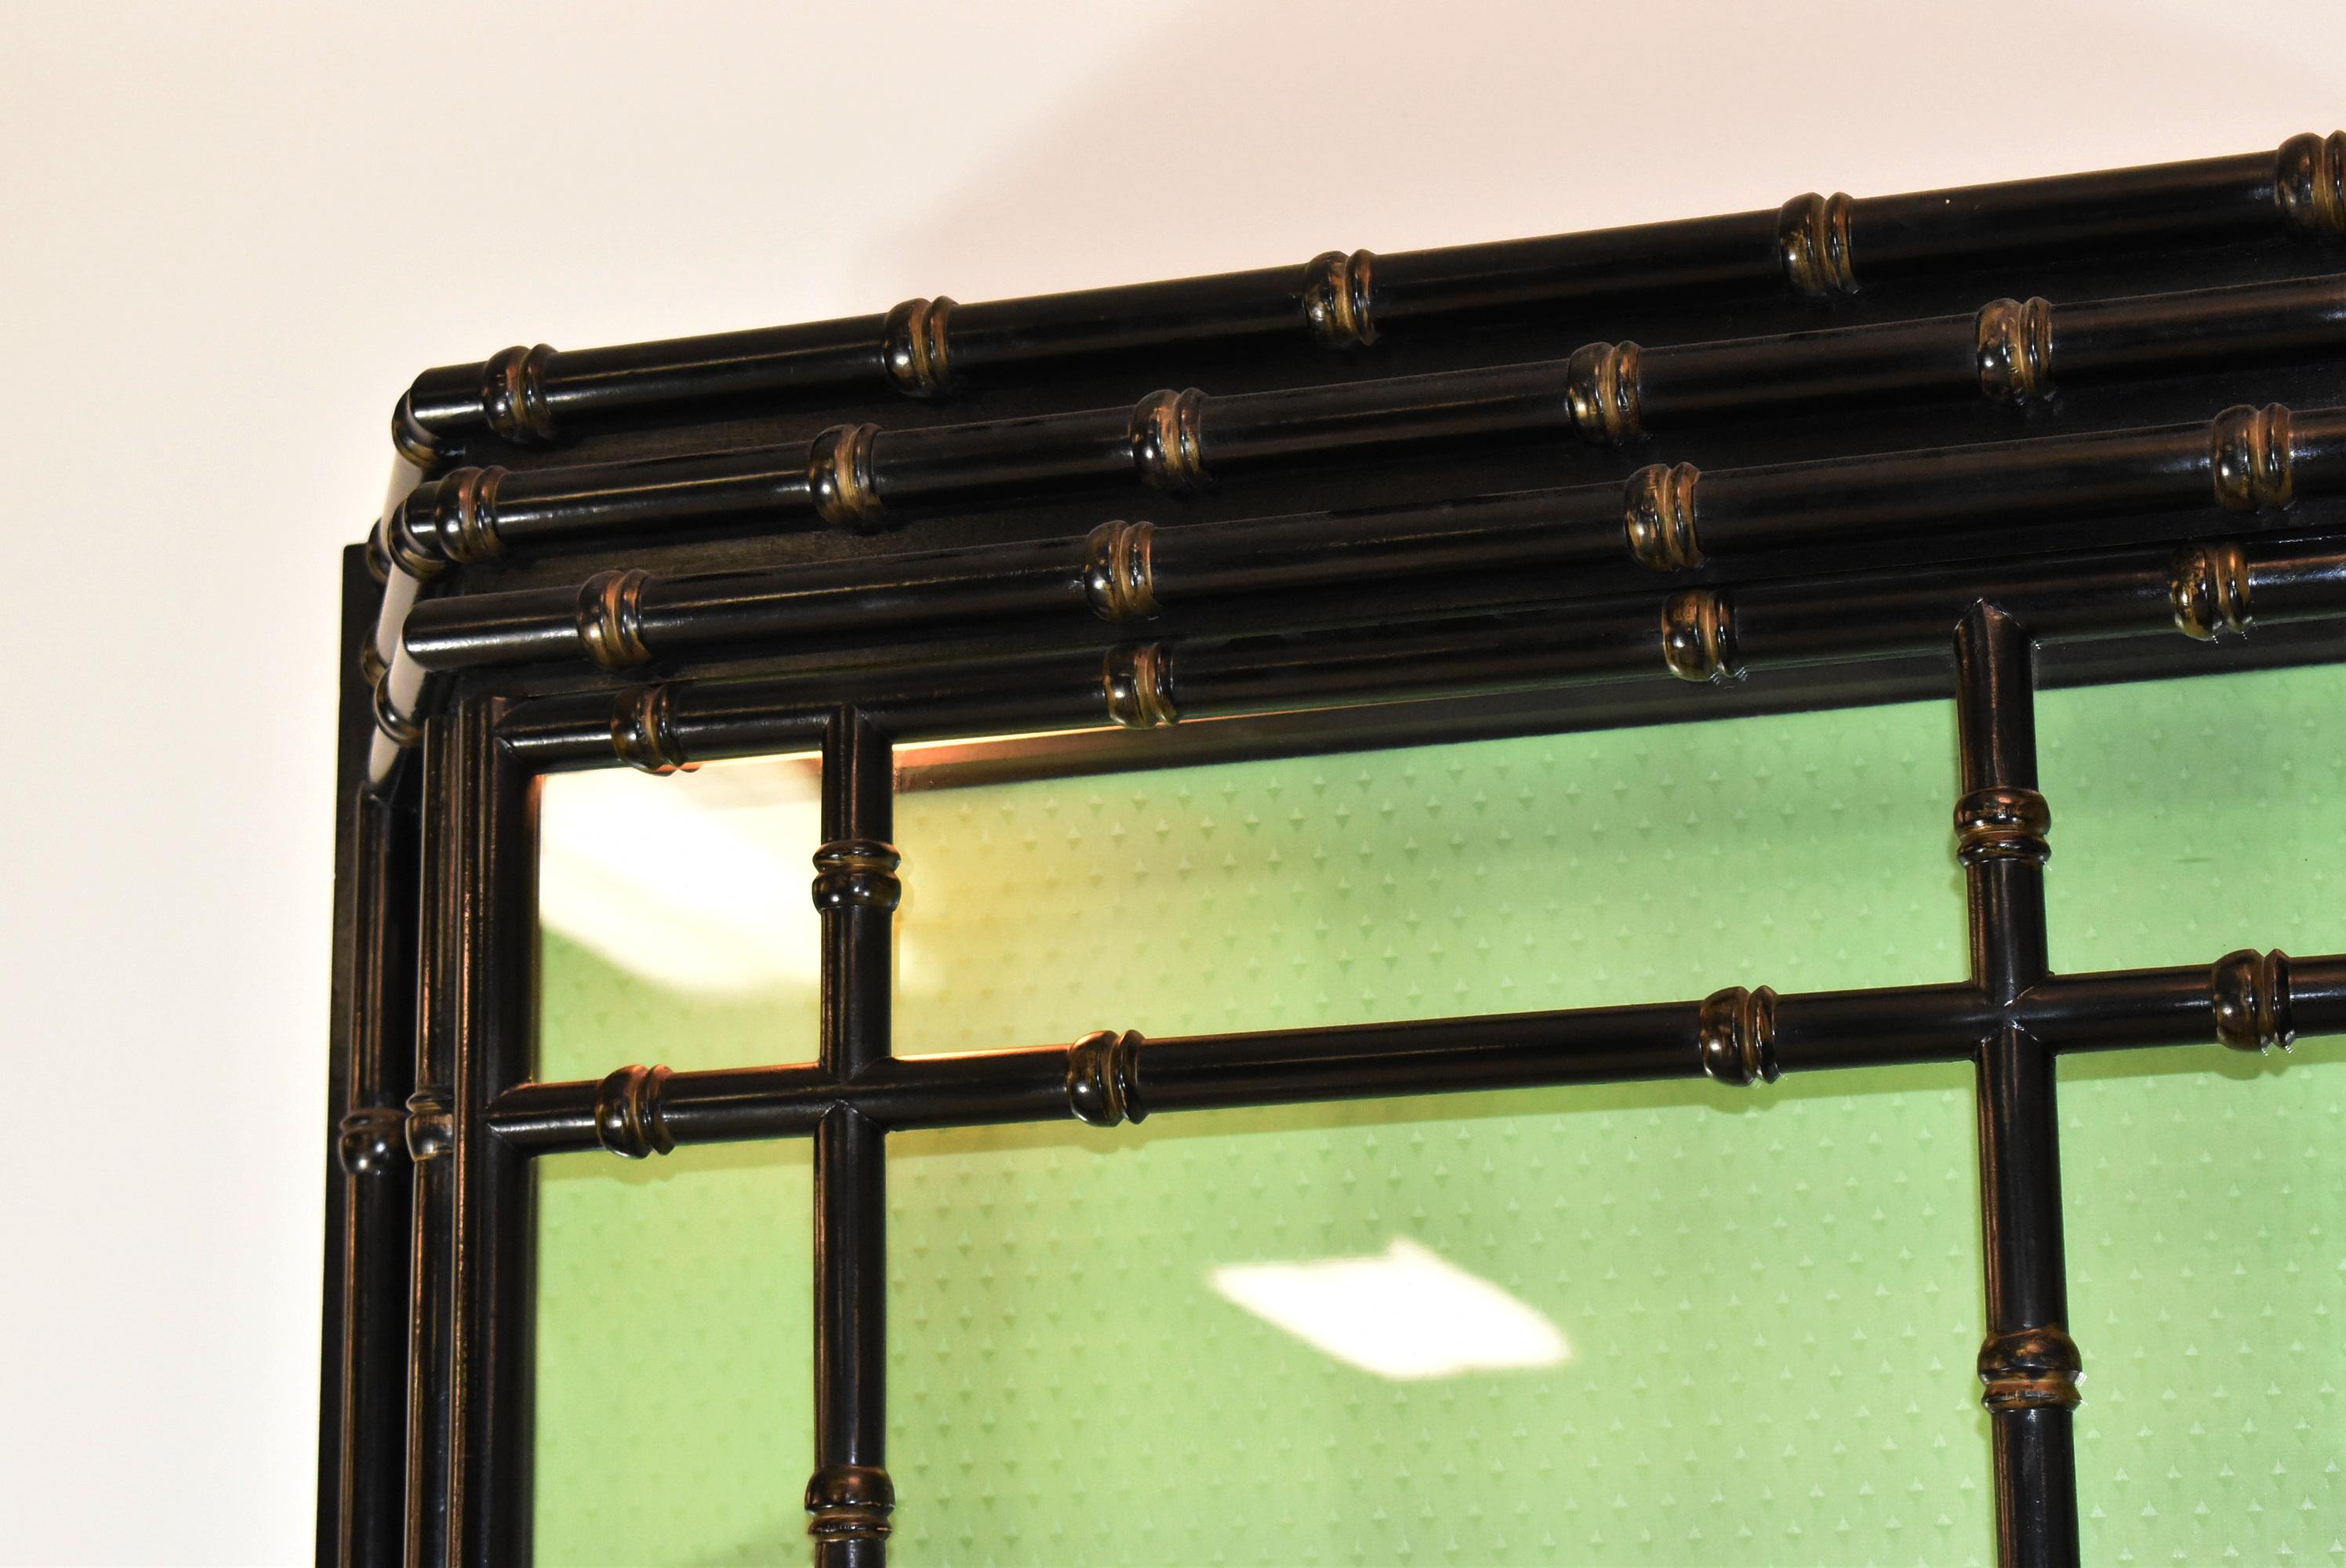 Beleuchtete Vitrine in schwarzem Lack im asiatischen Bambus-Design. Die Regale sind mit Blechschienen versehen. Zwei Türen mit Glasfronten und grüner Seidenrückwand. Sehr guter Zustand. Abmessungen: 8